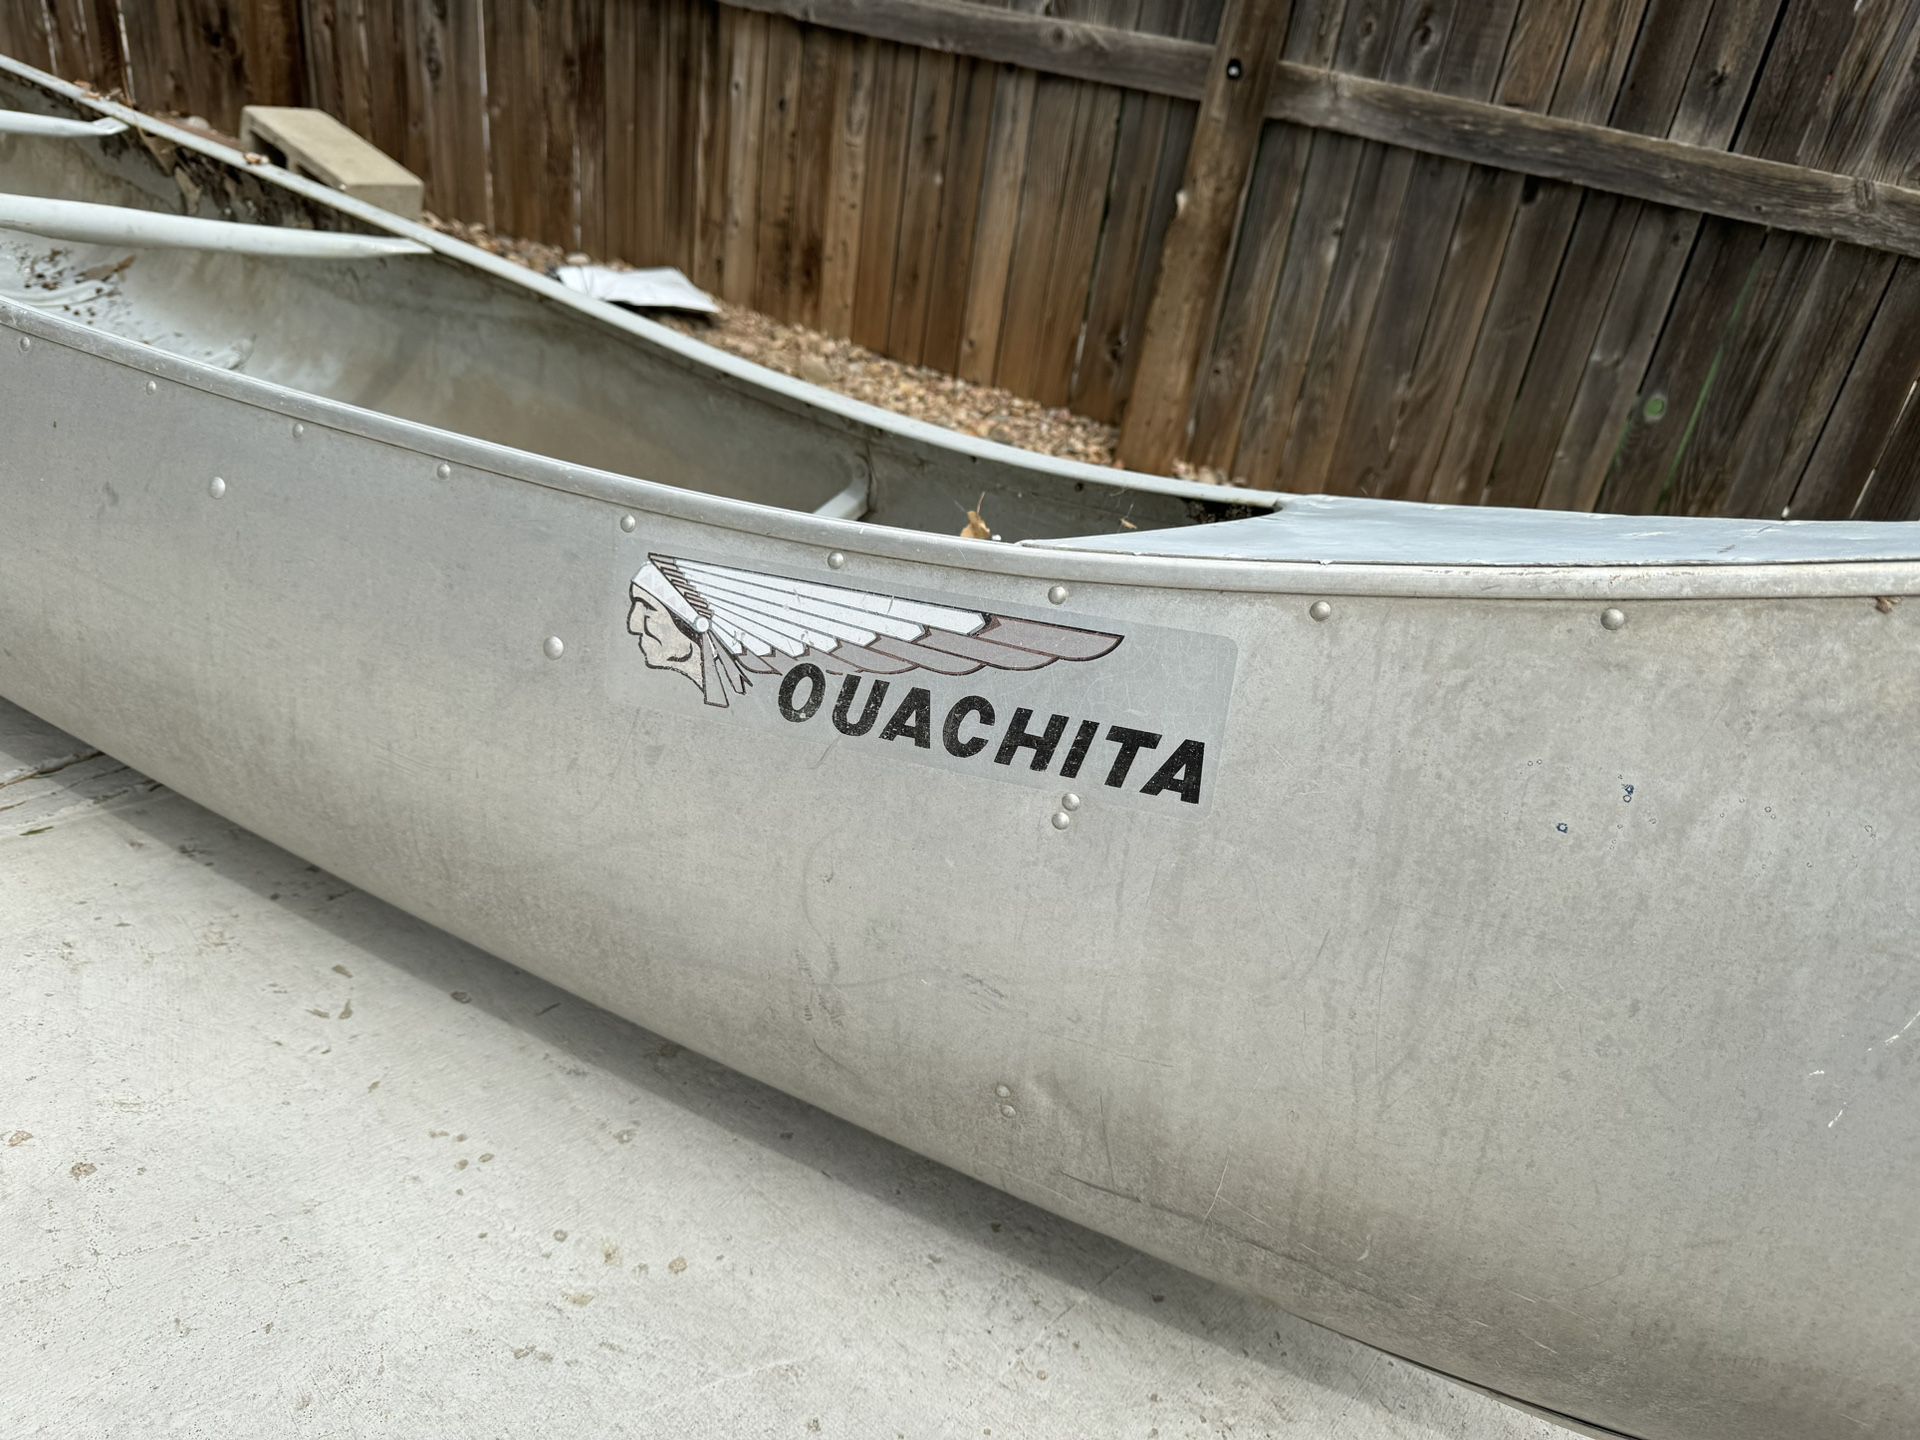 Aluminum canoe